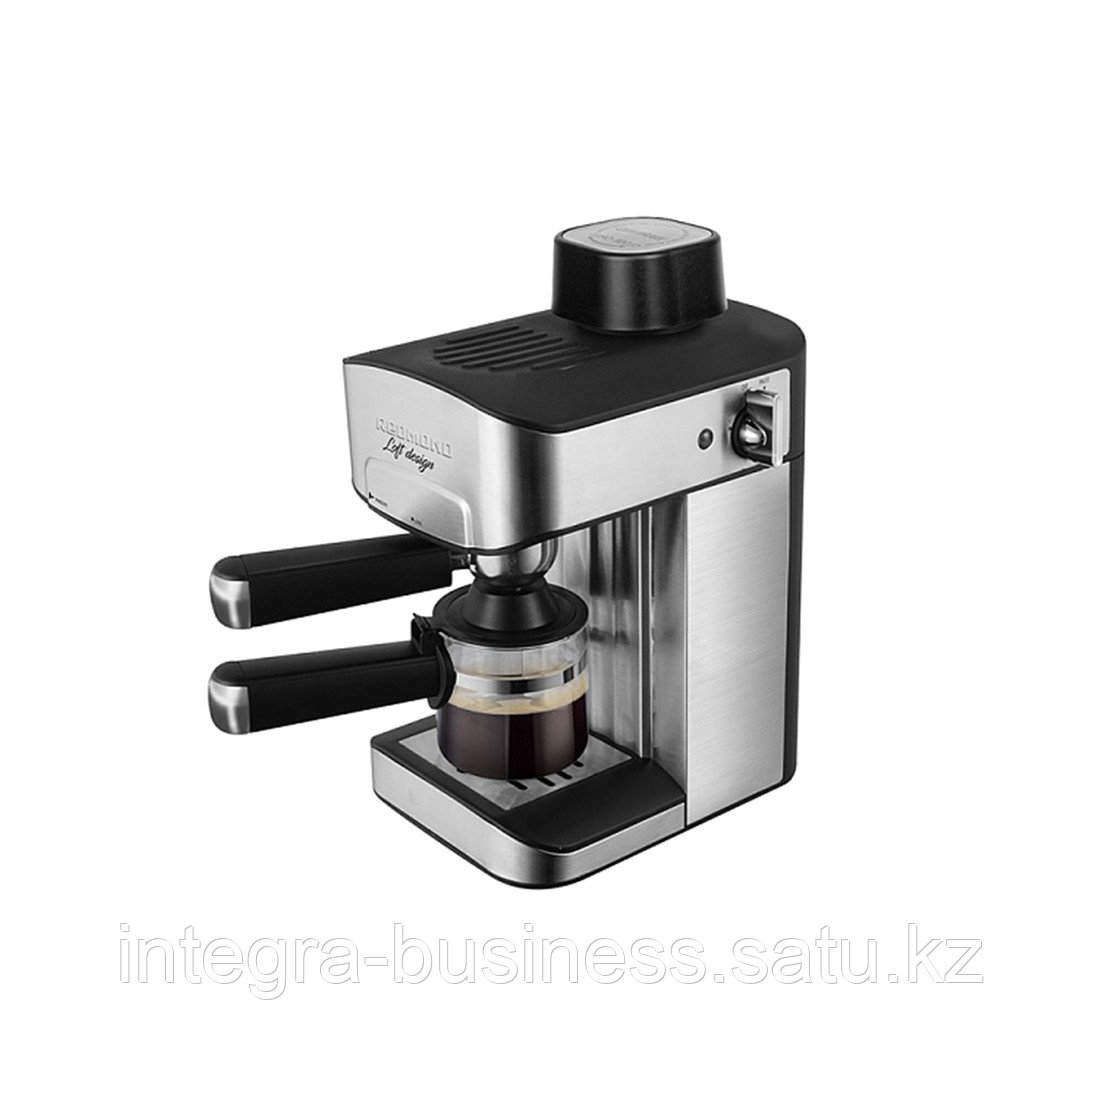 Кофеварка REDMOND RCM-M1523 Черный, фото 1